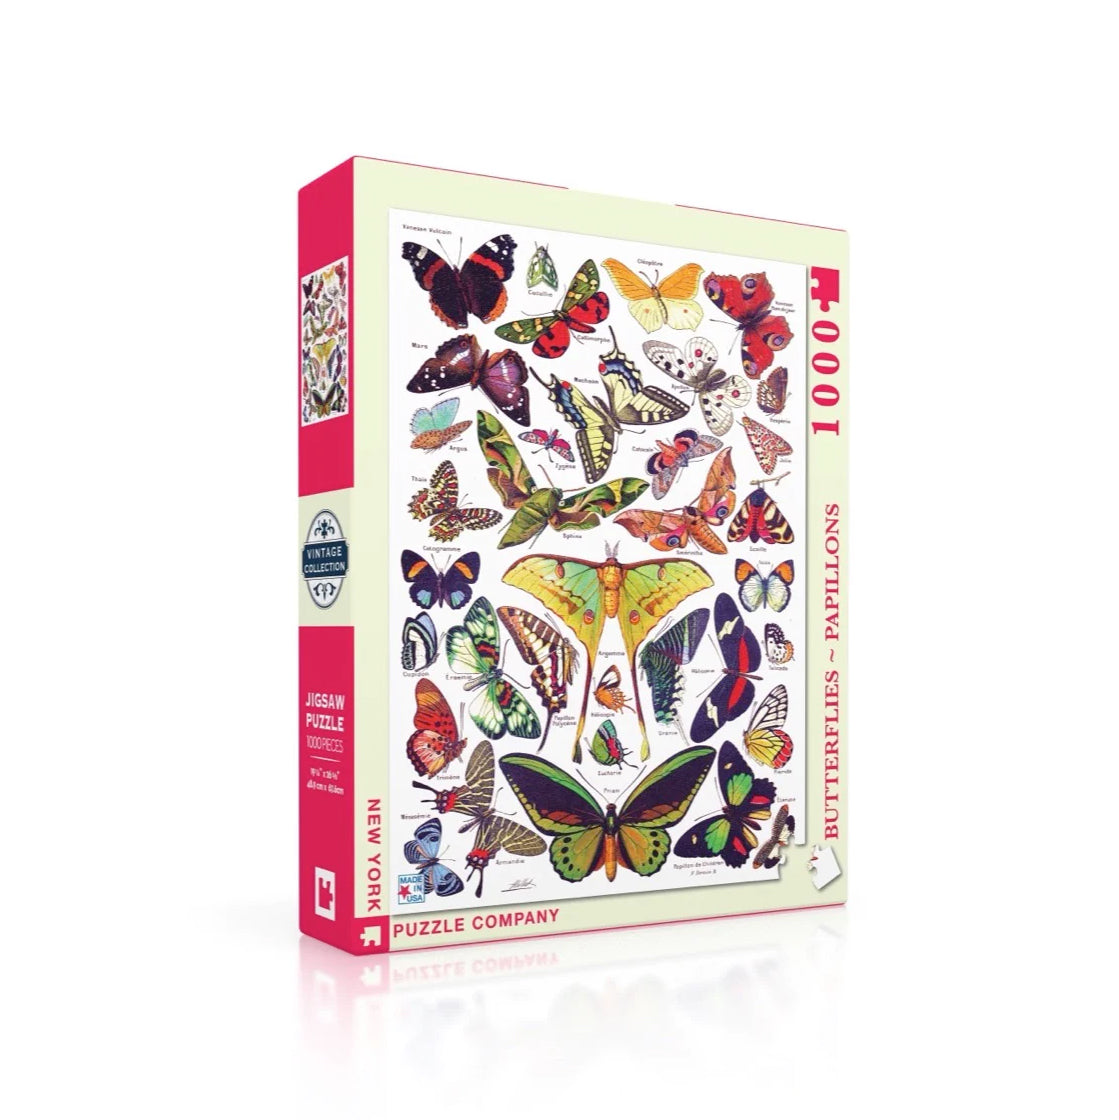 Puzzel Vintage Images Butterflies - Vlinders│New York Puzzle Company 1000 stukjes│art. PD633│verpakking met schaduw